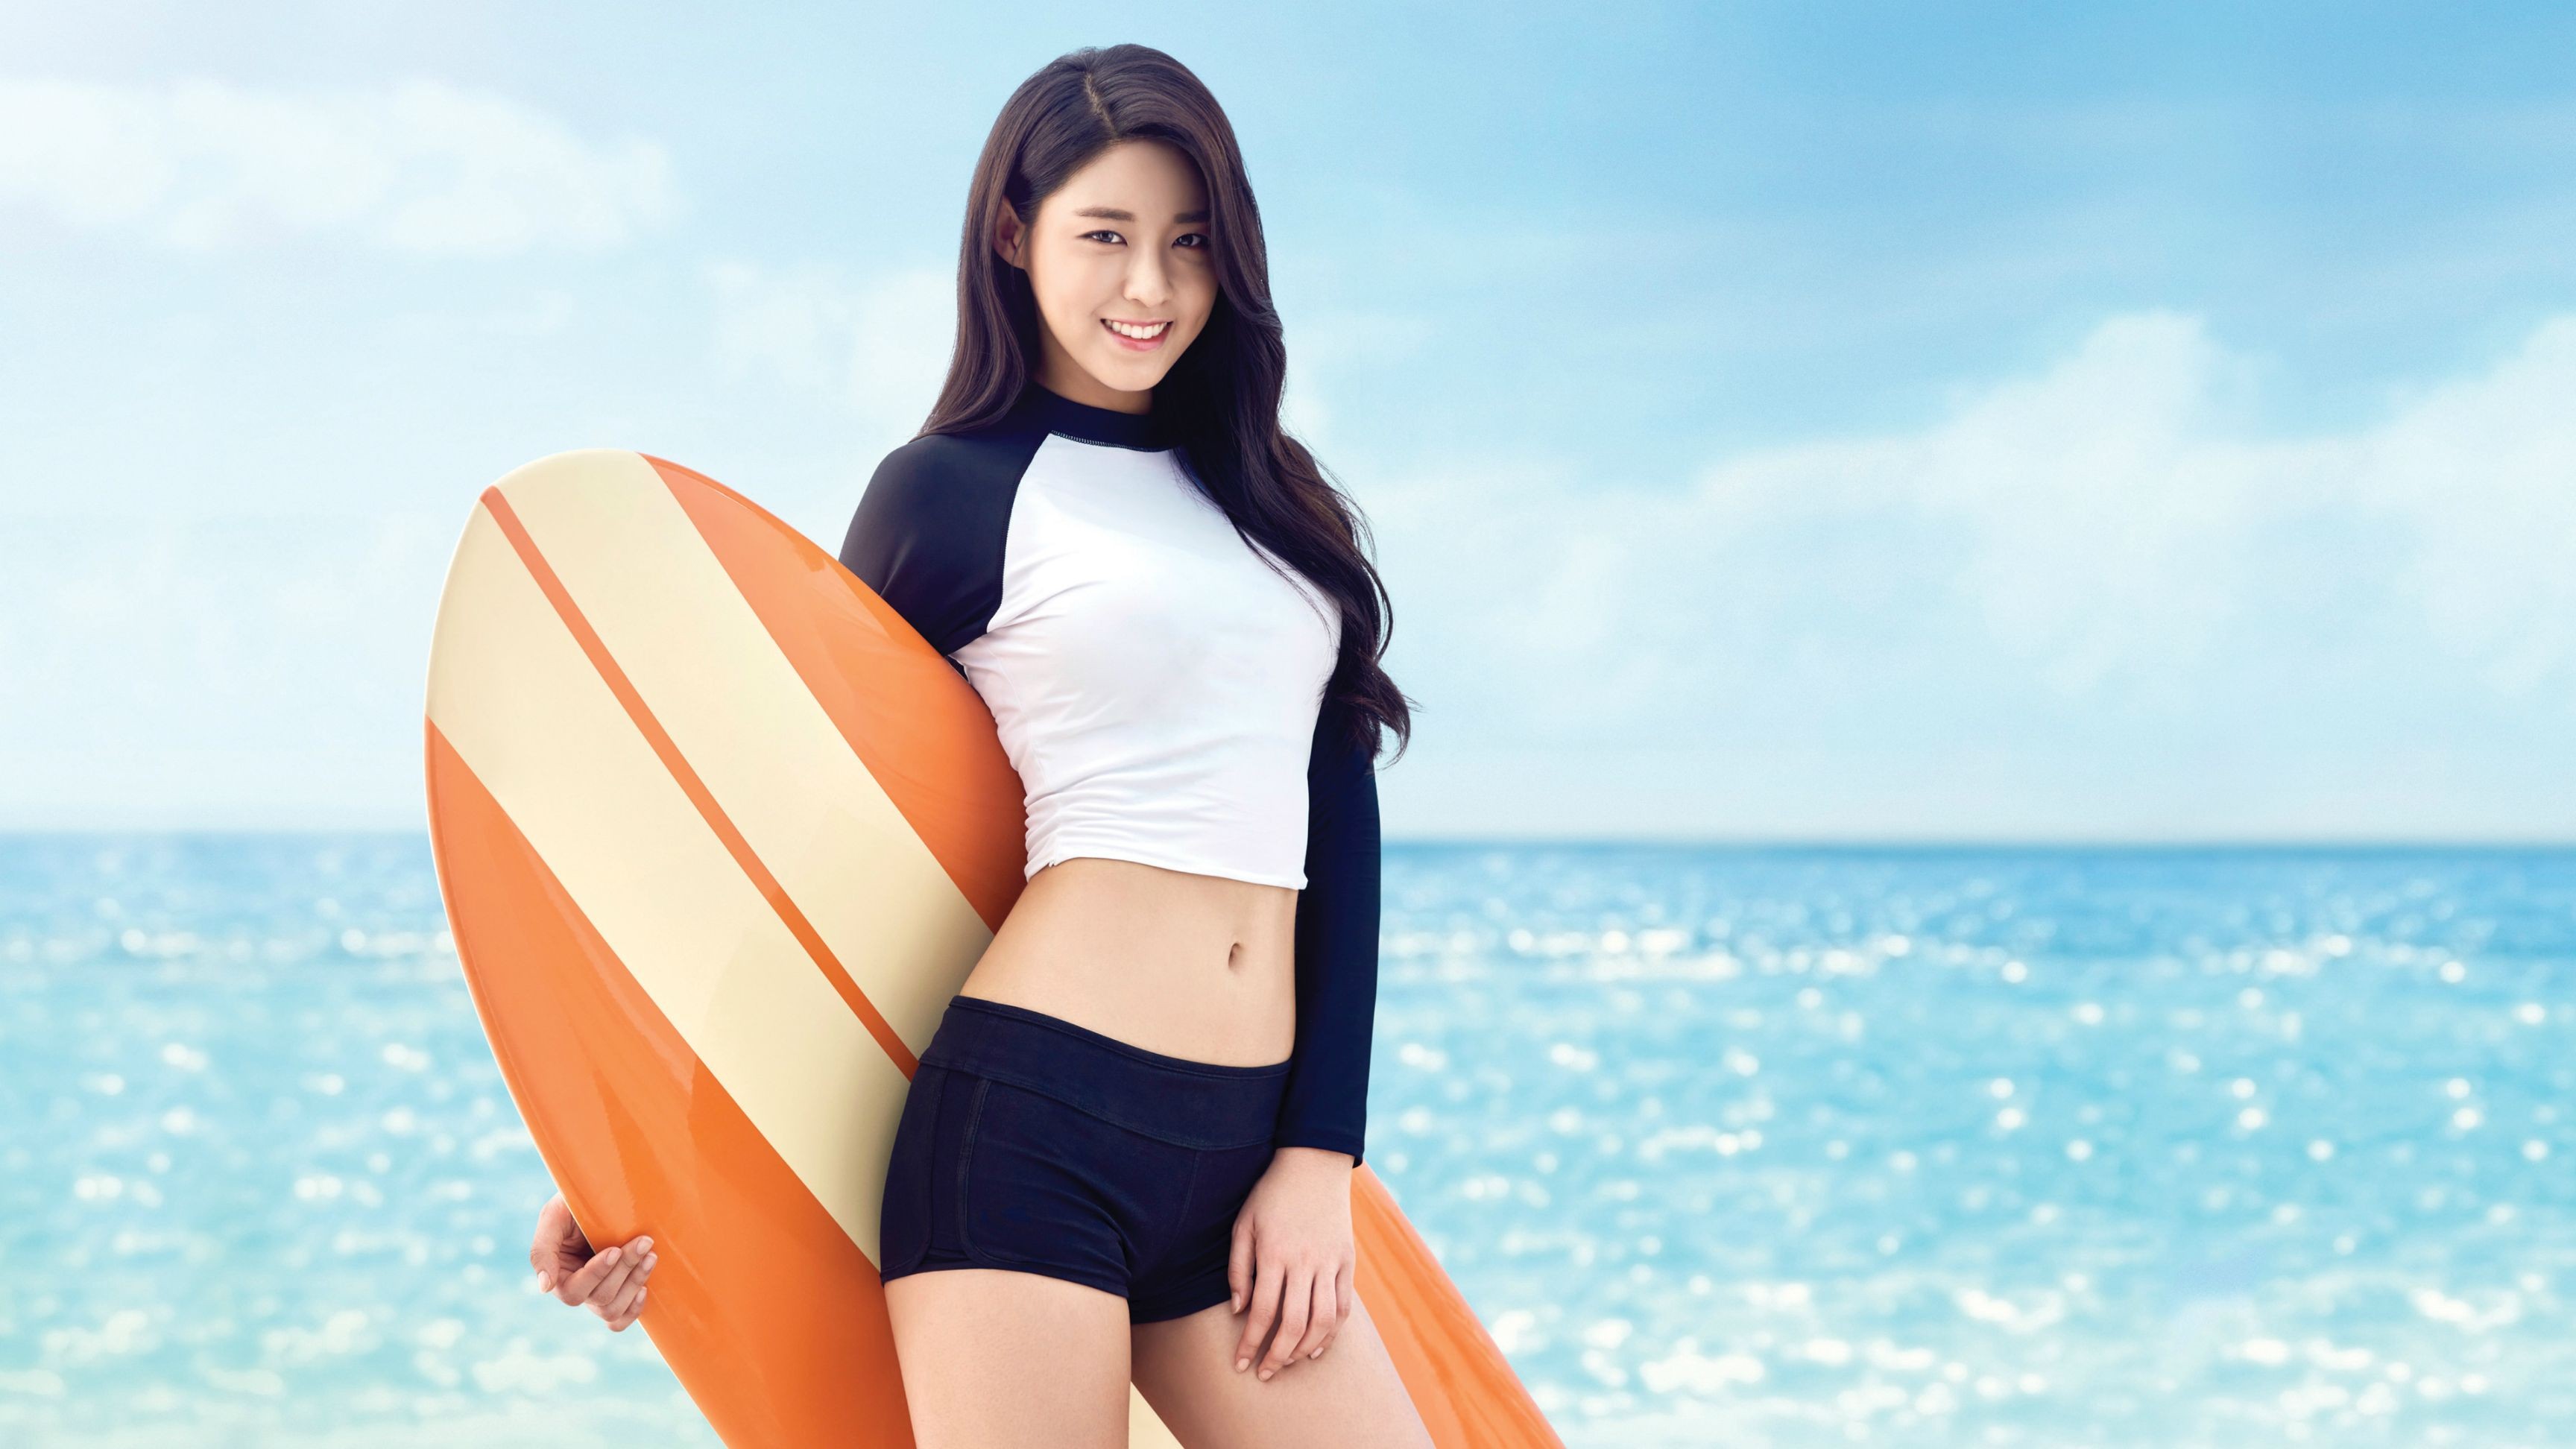 K Pop Seolhyun AOA Crop Top Surfboards Women 3456x1944